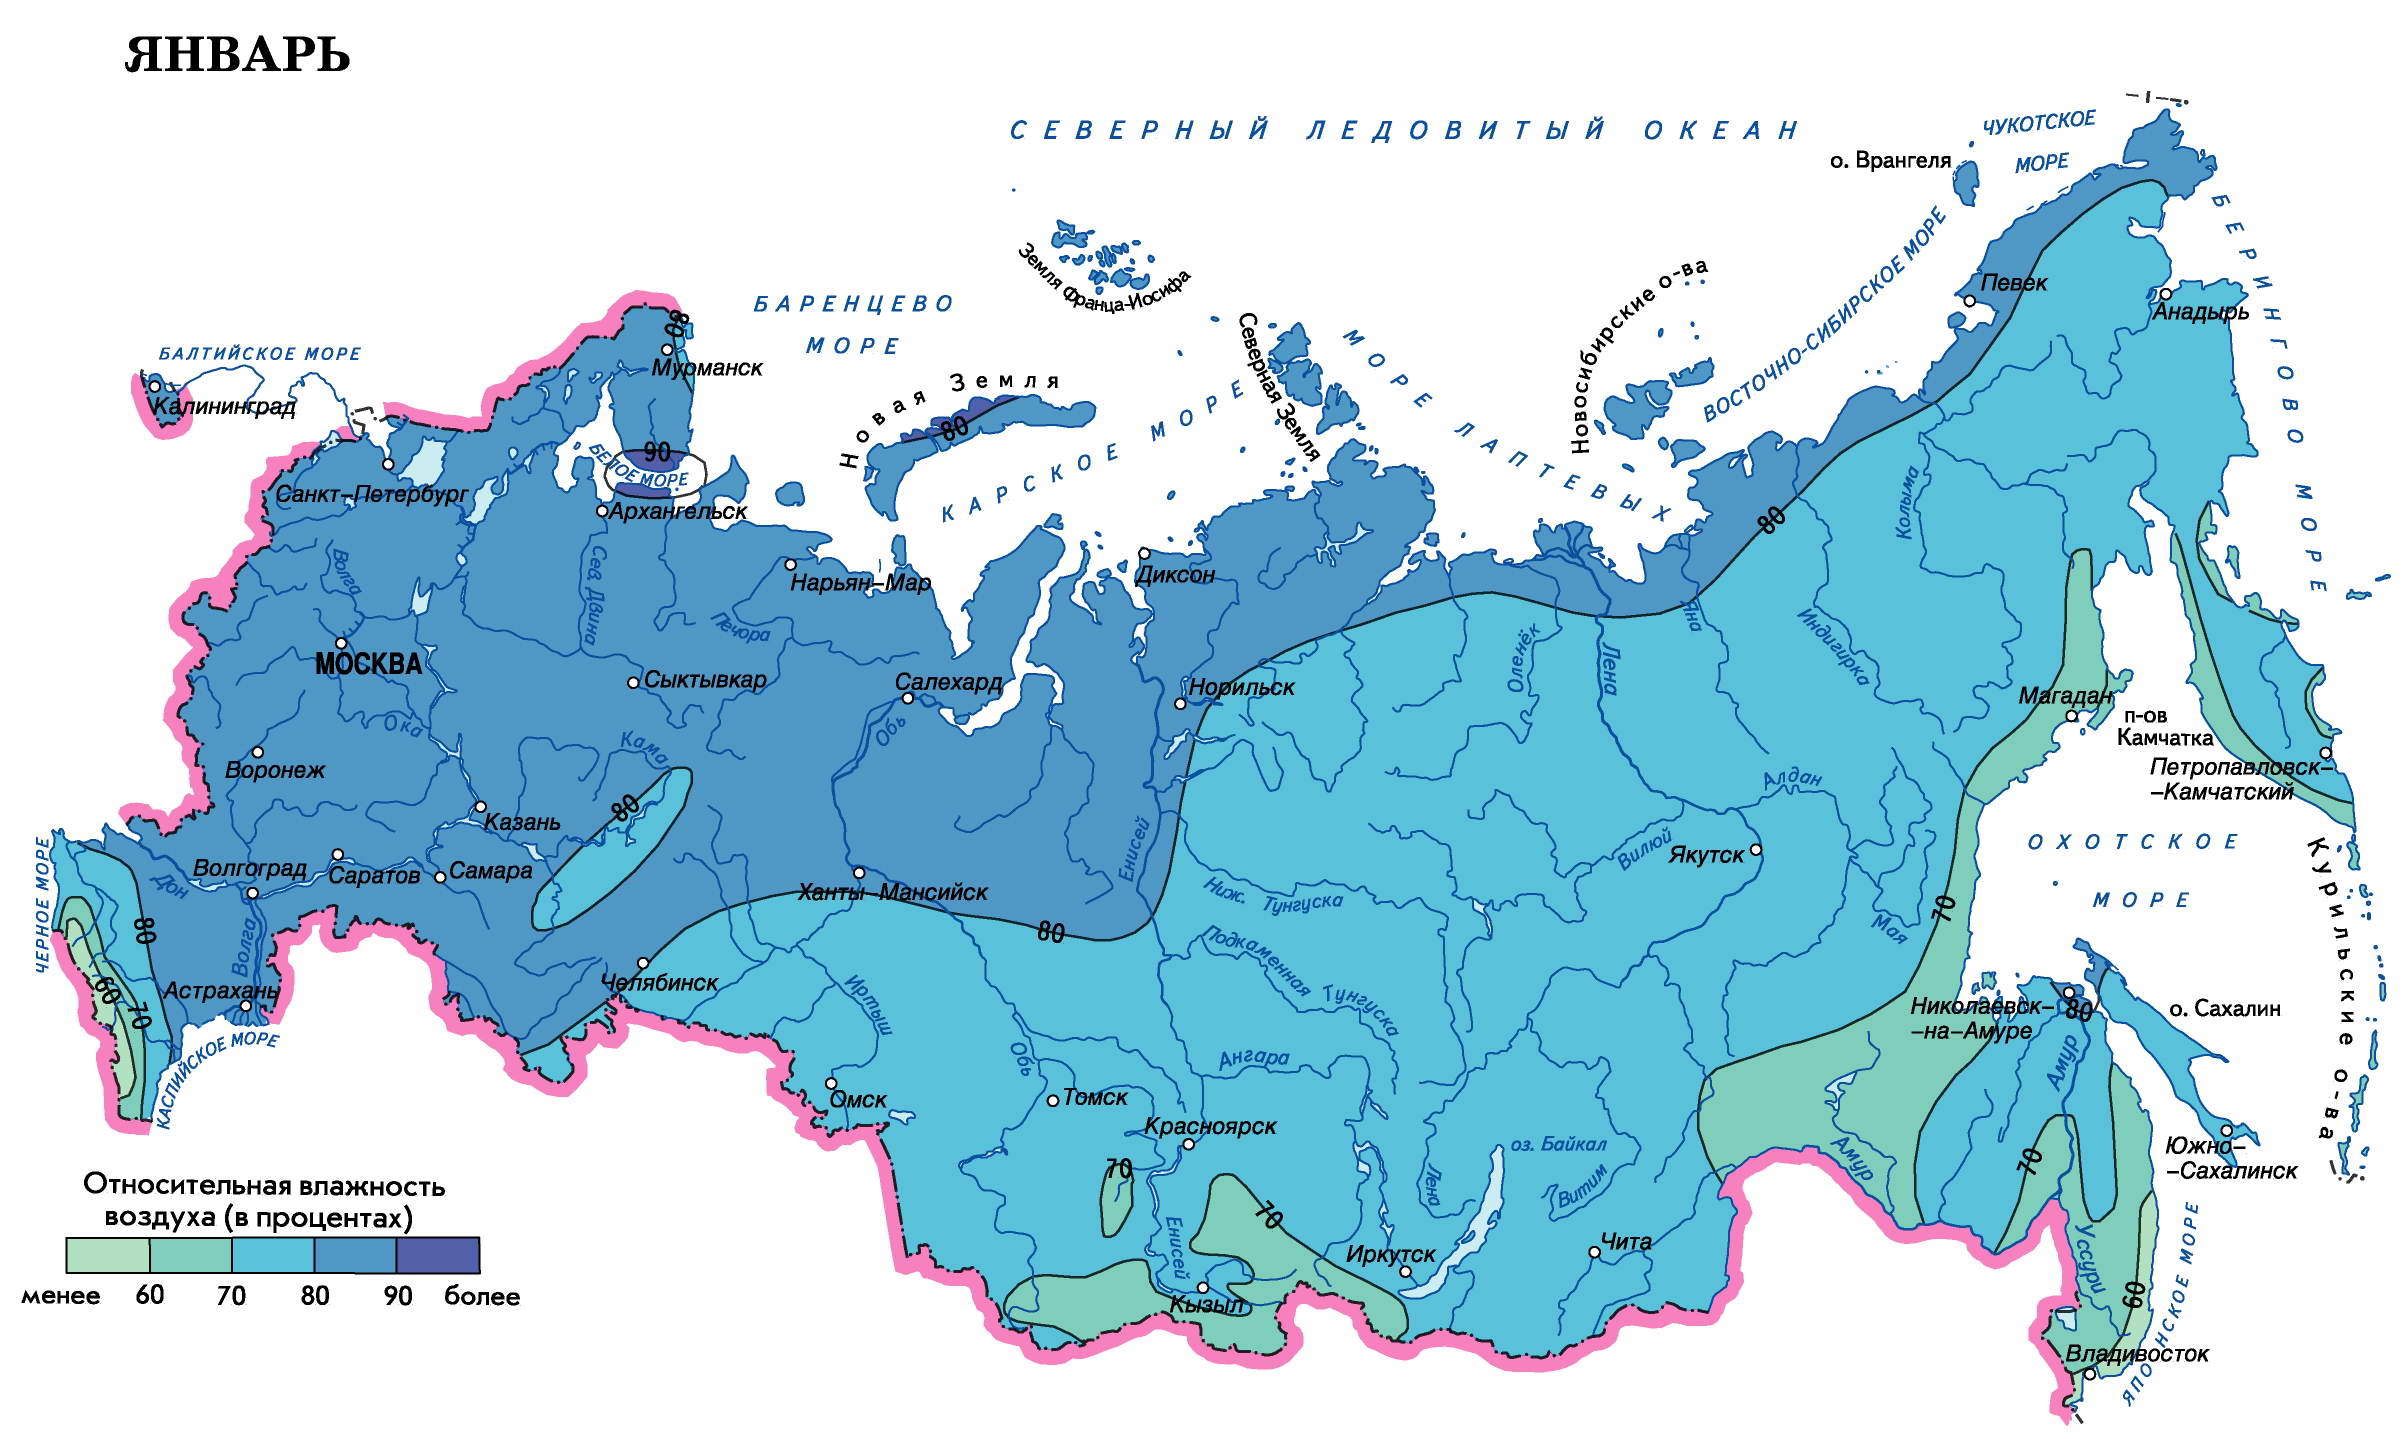 Какая влажность воздуха в перми. Карта влажности воздуха России. Зоны относительной влажности на карте РФ. Карта влажности воздуха России среднегодовая.